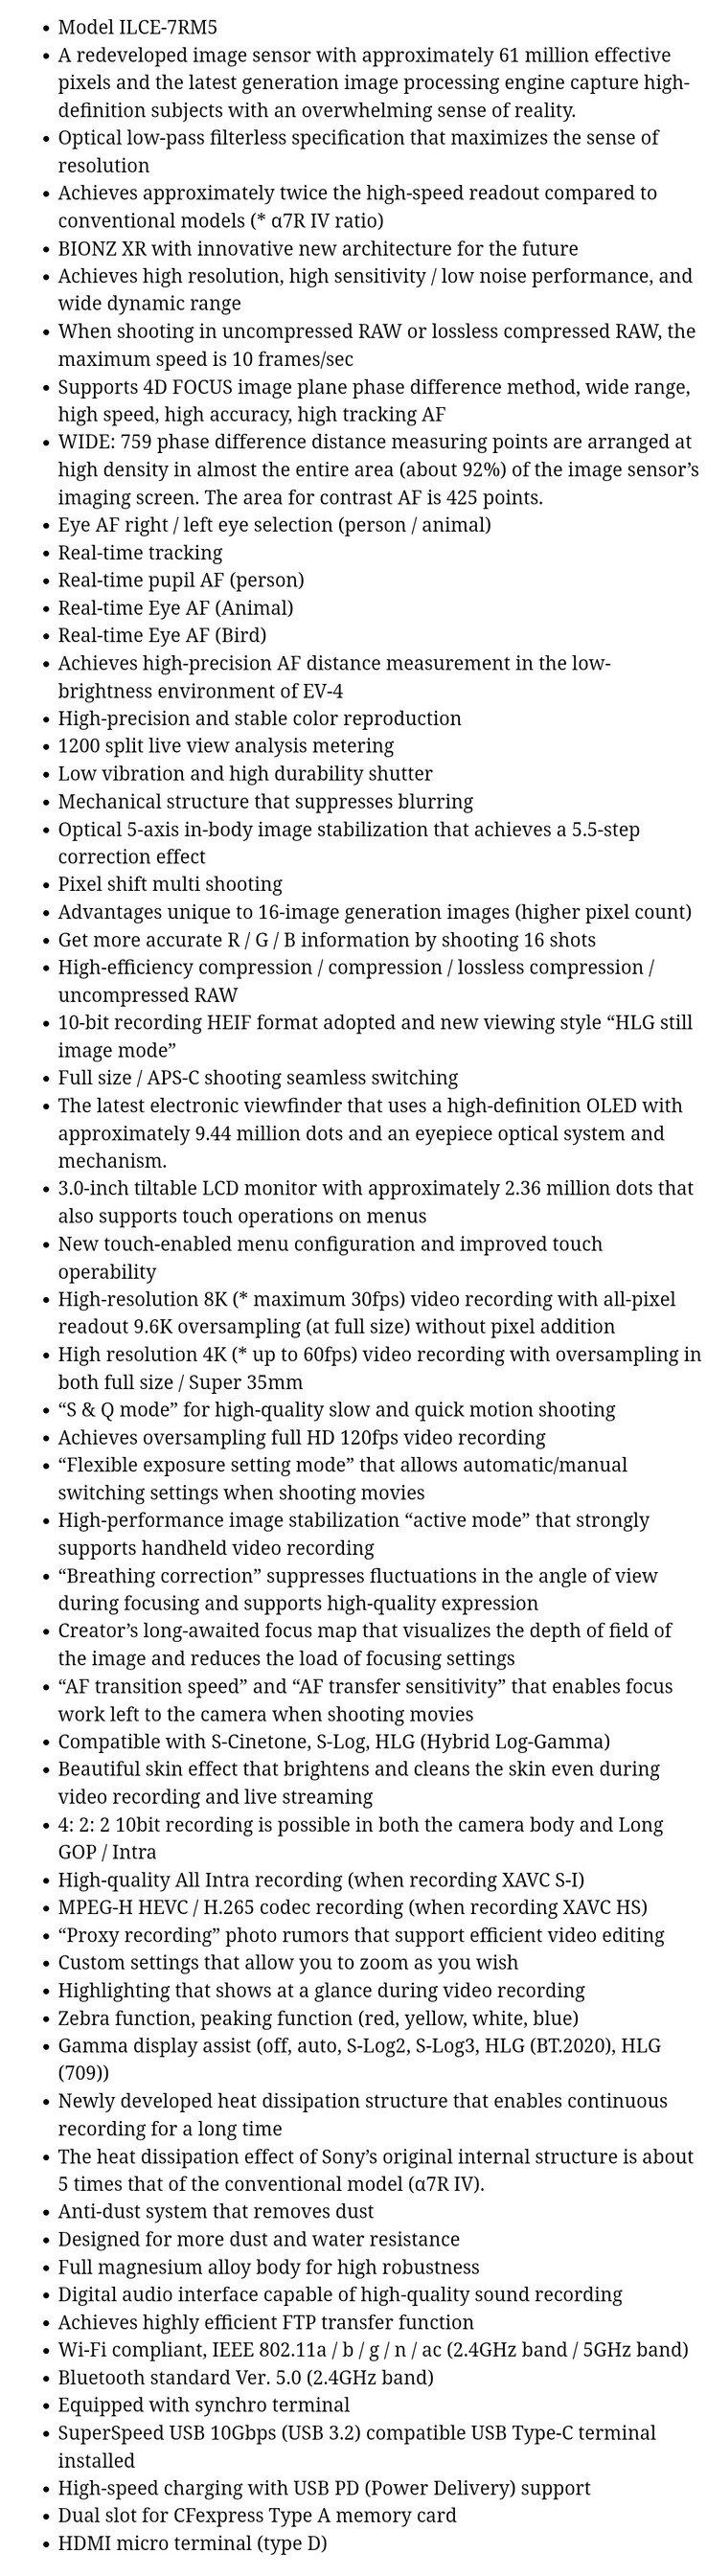 La liste complète des spécifications présumées du Sony a7R V. (Source : PhotoRumors)